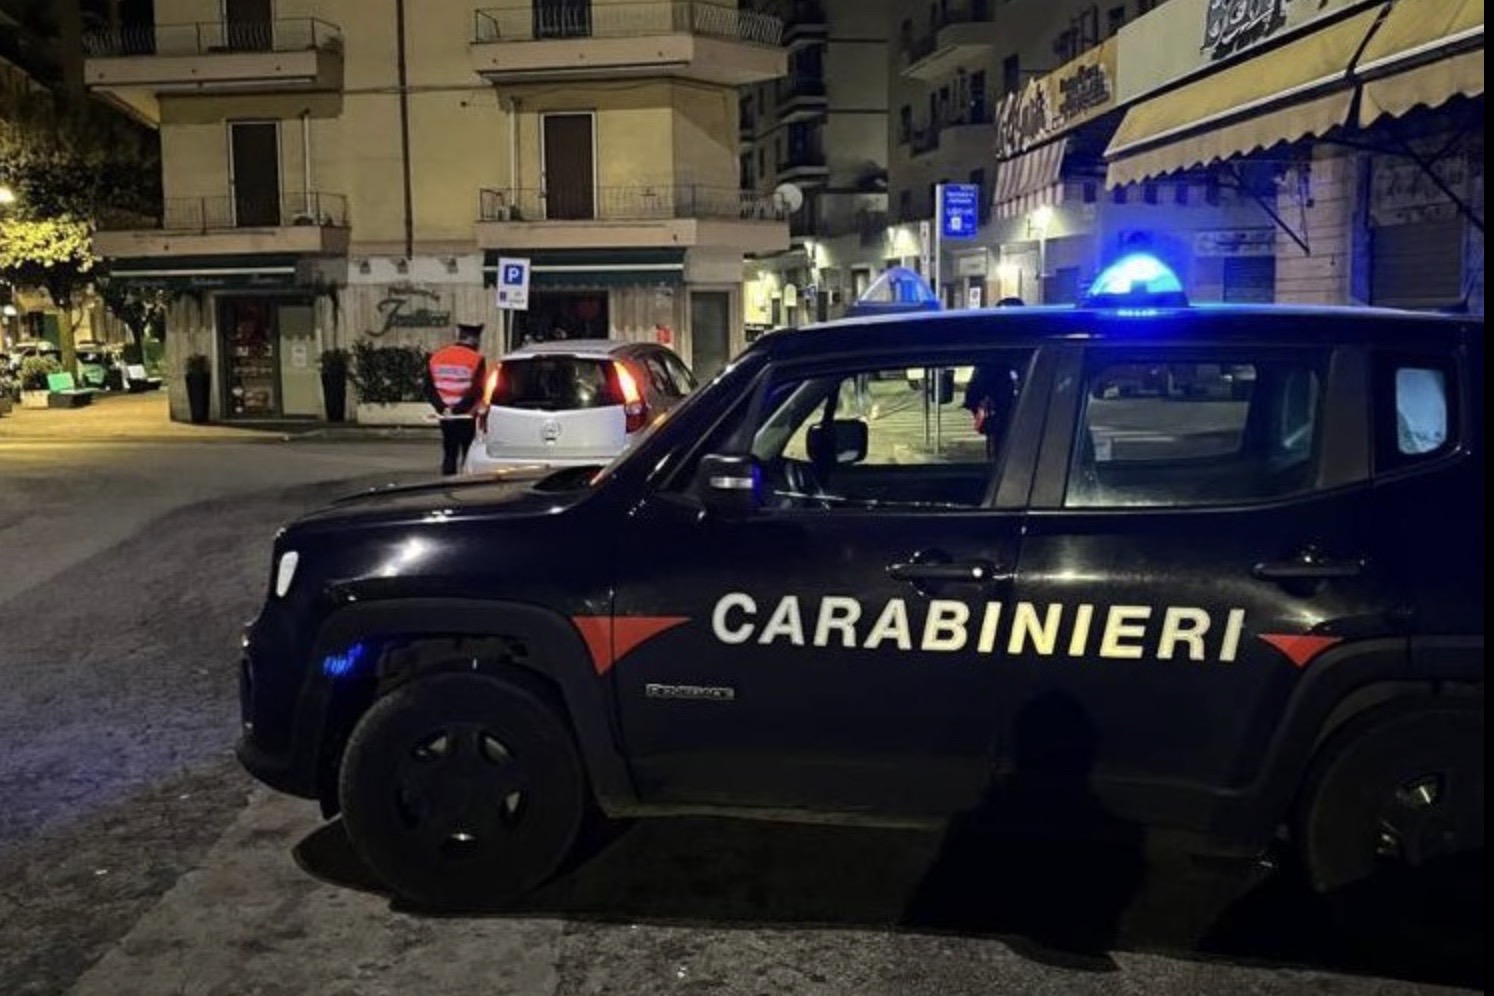 Colleferro: les carabiniers continuent les contrôles pendant la "movida"